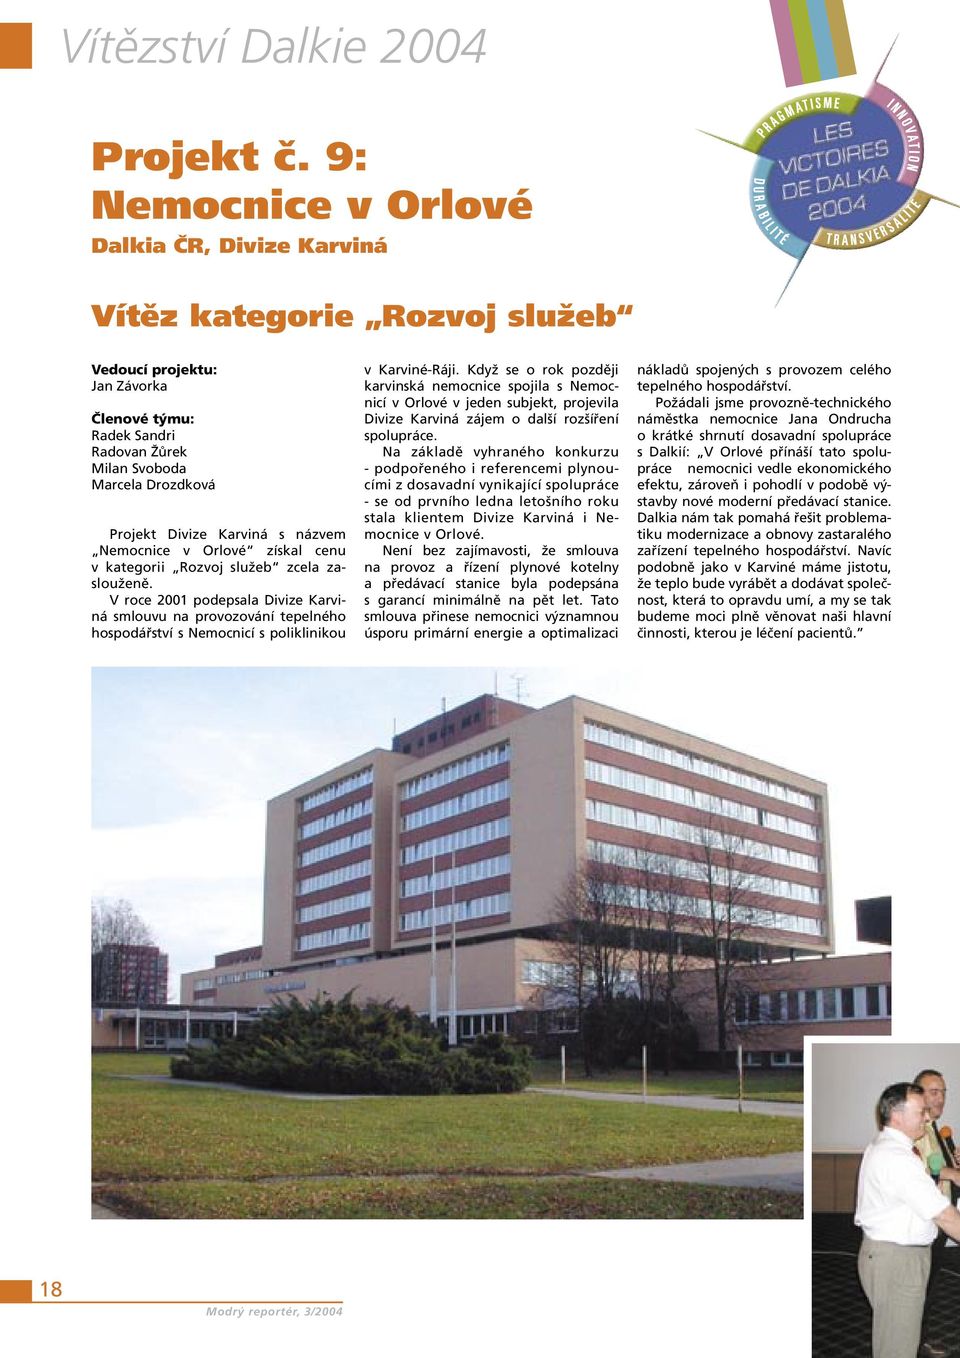 Karviná s názvem Nemocnice v Orlové získal cenu v kategorii Rozvoj služeb zcela zaslouženě.